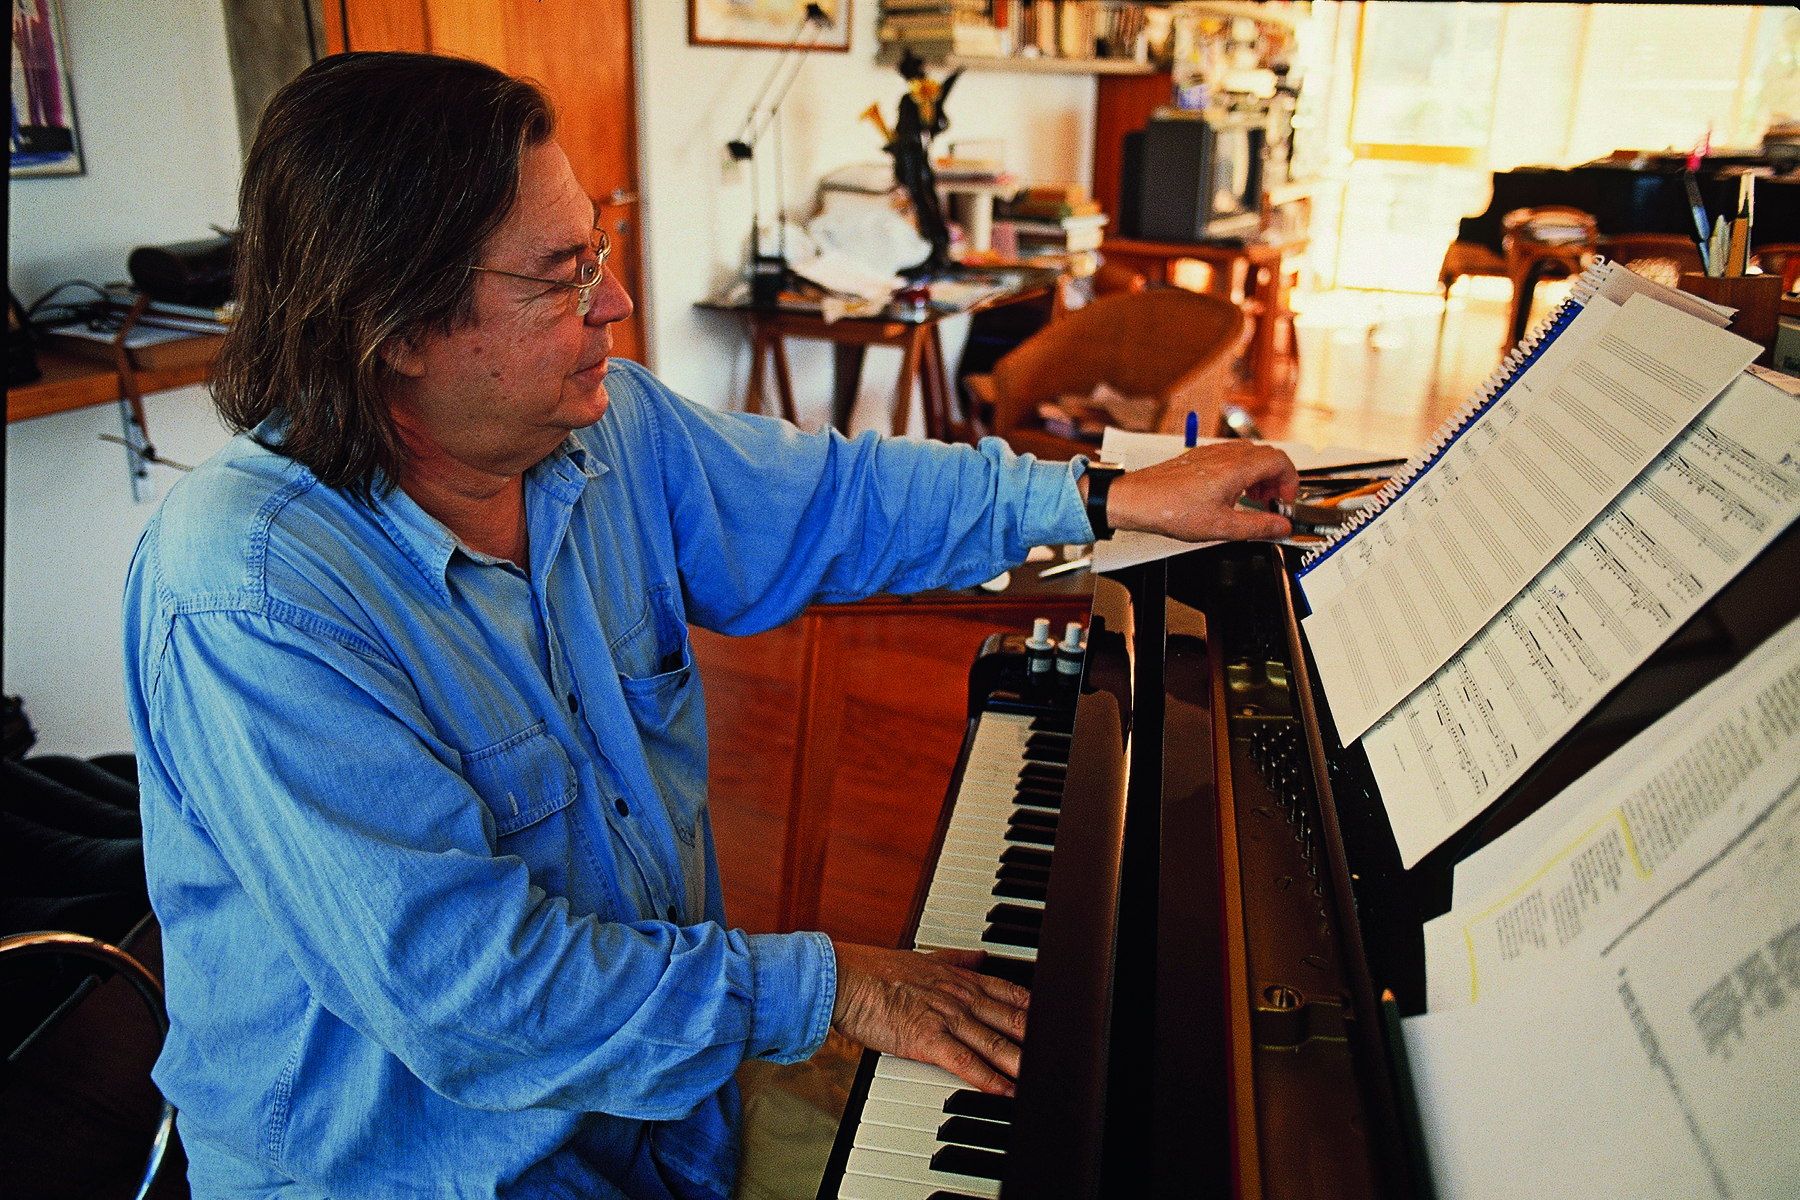 Fotografia. Homem de cabelo médio liso castanho e óculos de armação arredondada, vestindo camisa azul. Ele está de perfil, tocando piano enquanto observa uma partitura disposta na parte de cima do piano.